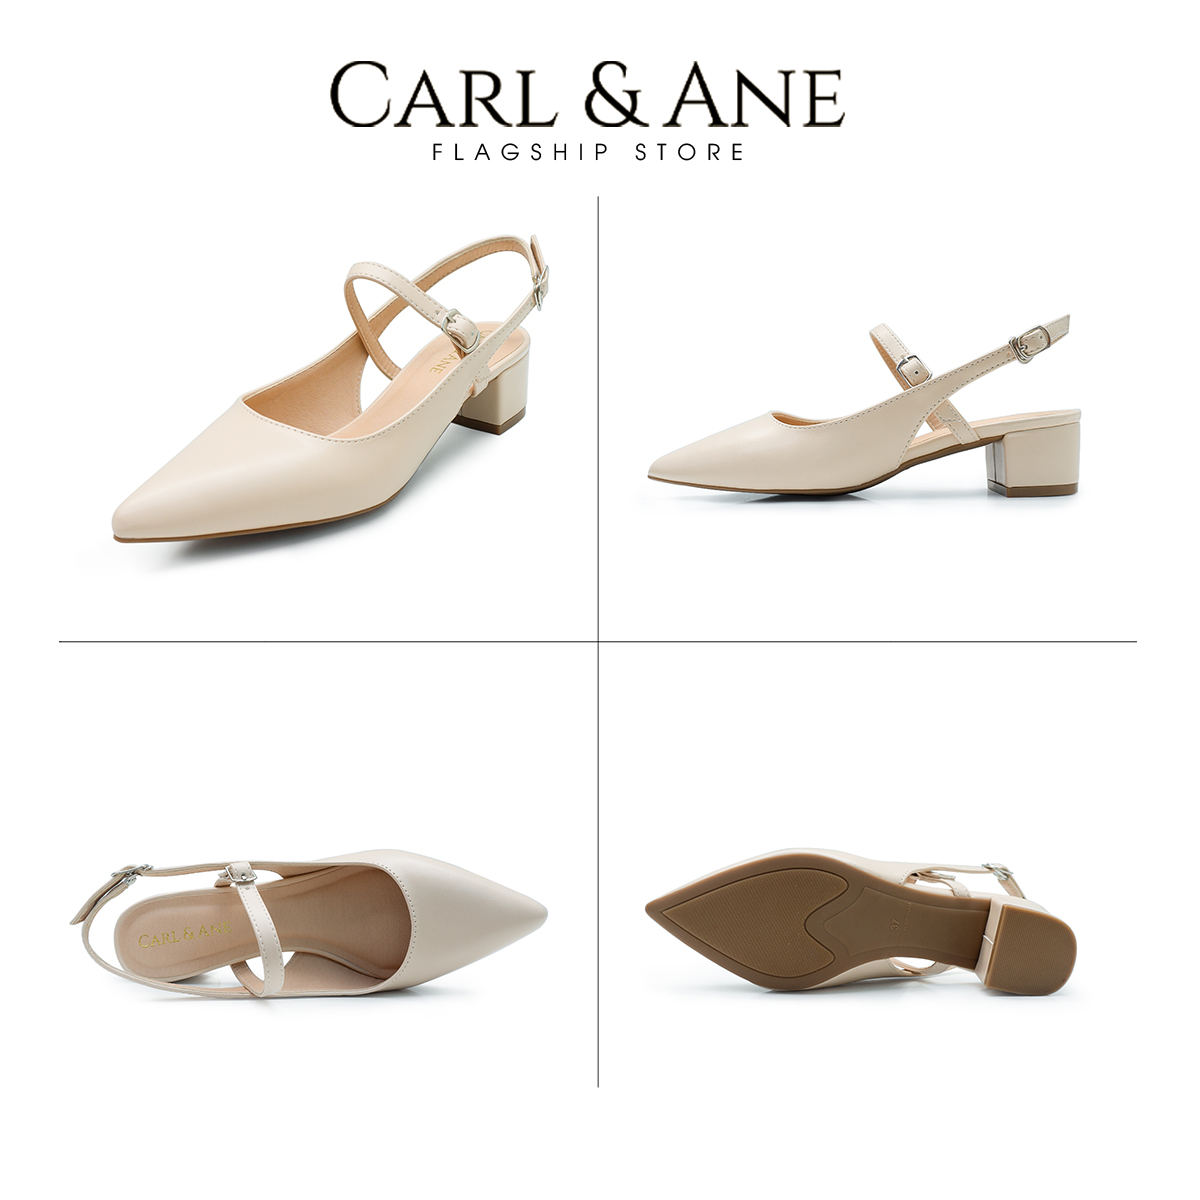 Carl & Ane - Giày cao gót mũi nhọn kiểu dáng thanh lịch cao 3,5cm màu nude - CL023